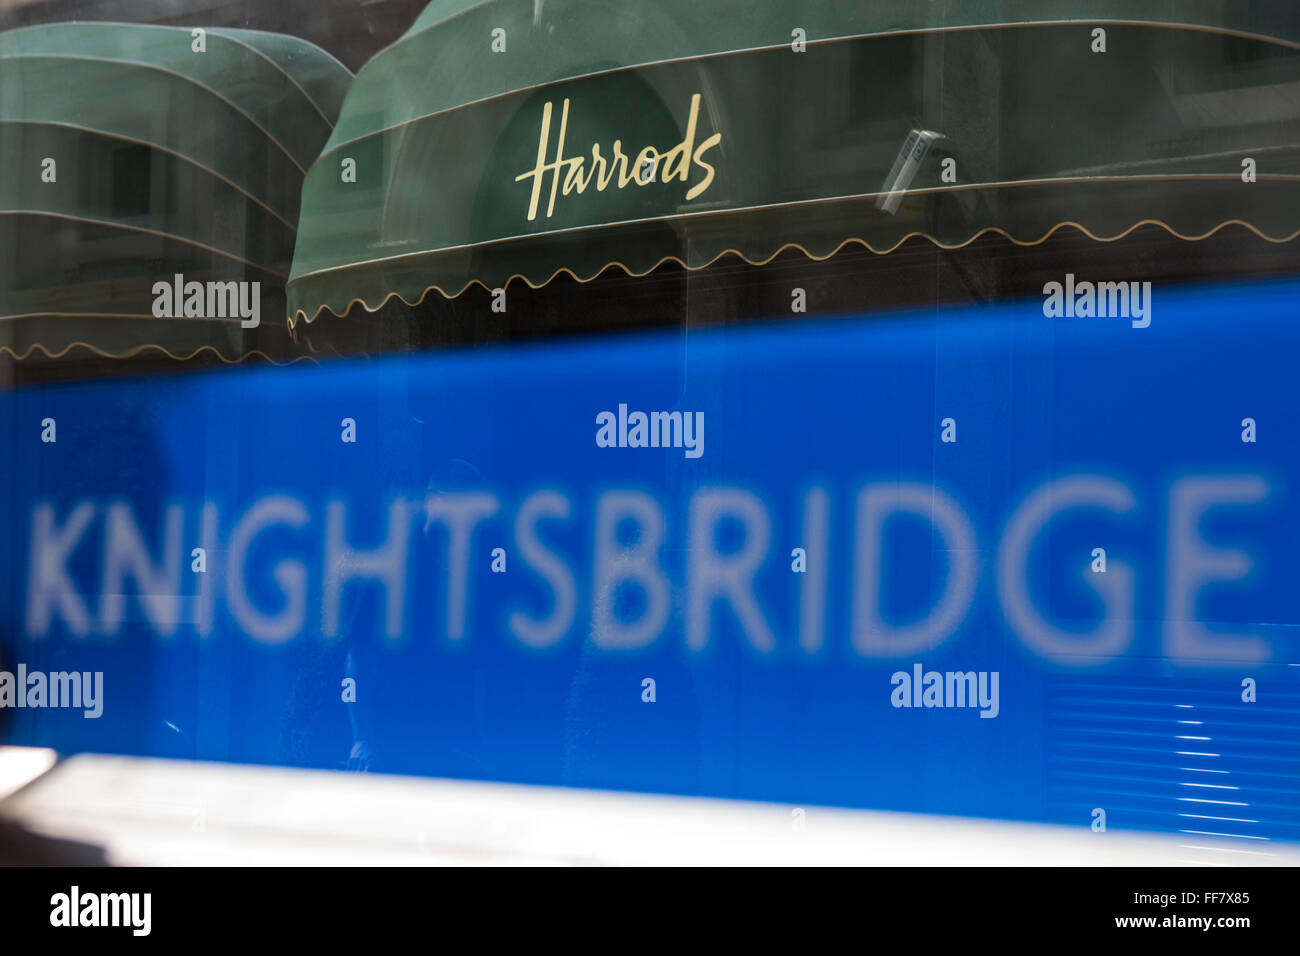 Knightsbridge London Underground Schild vor dem Eingang der Tube Station mit der Welt berühmten Harrods Shop Markise im Hintergrund, London, Vereinigtes Königreich. Stockfoto